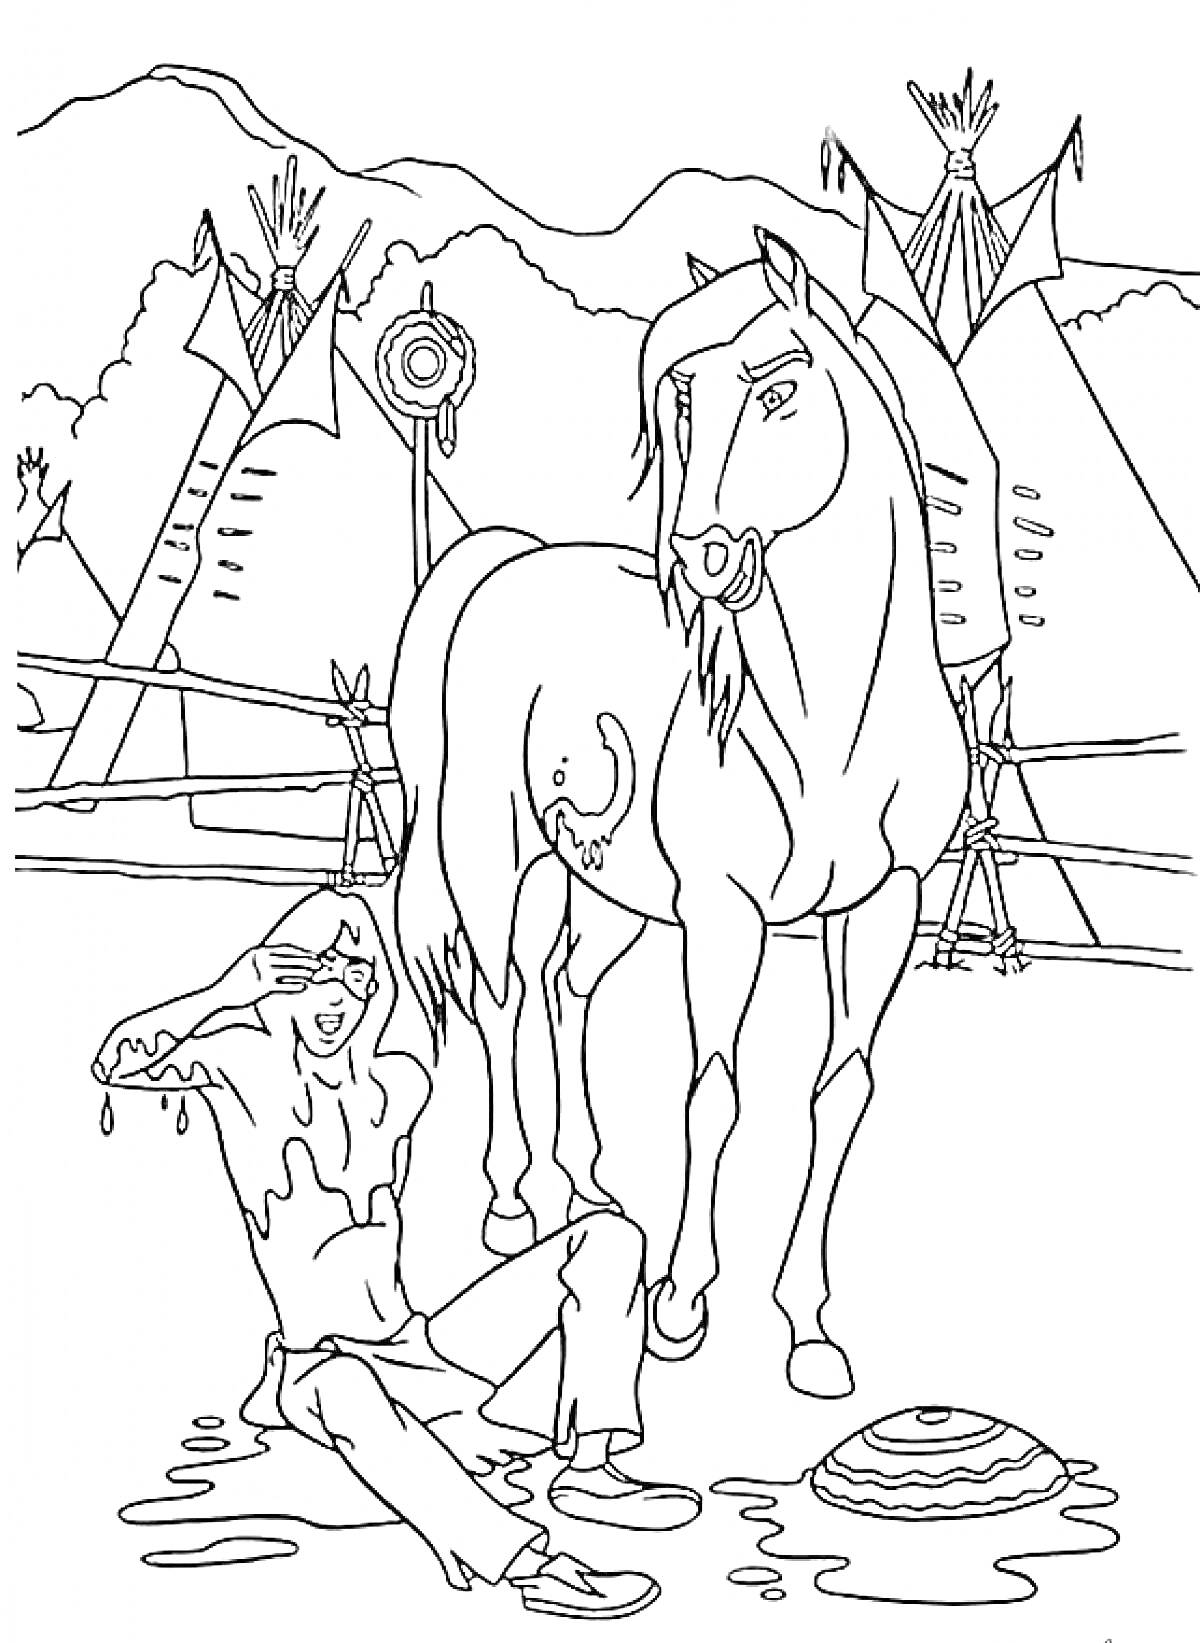 Раскраска Человек, подстриженный конь, вигвамы, горы, забор, лужи